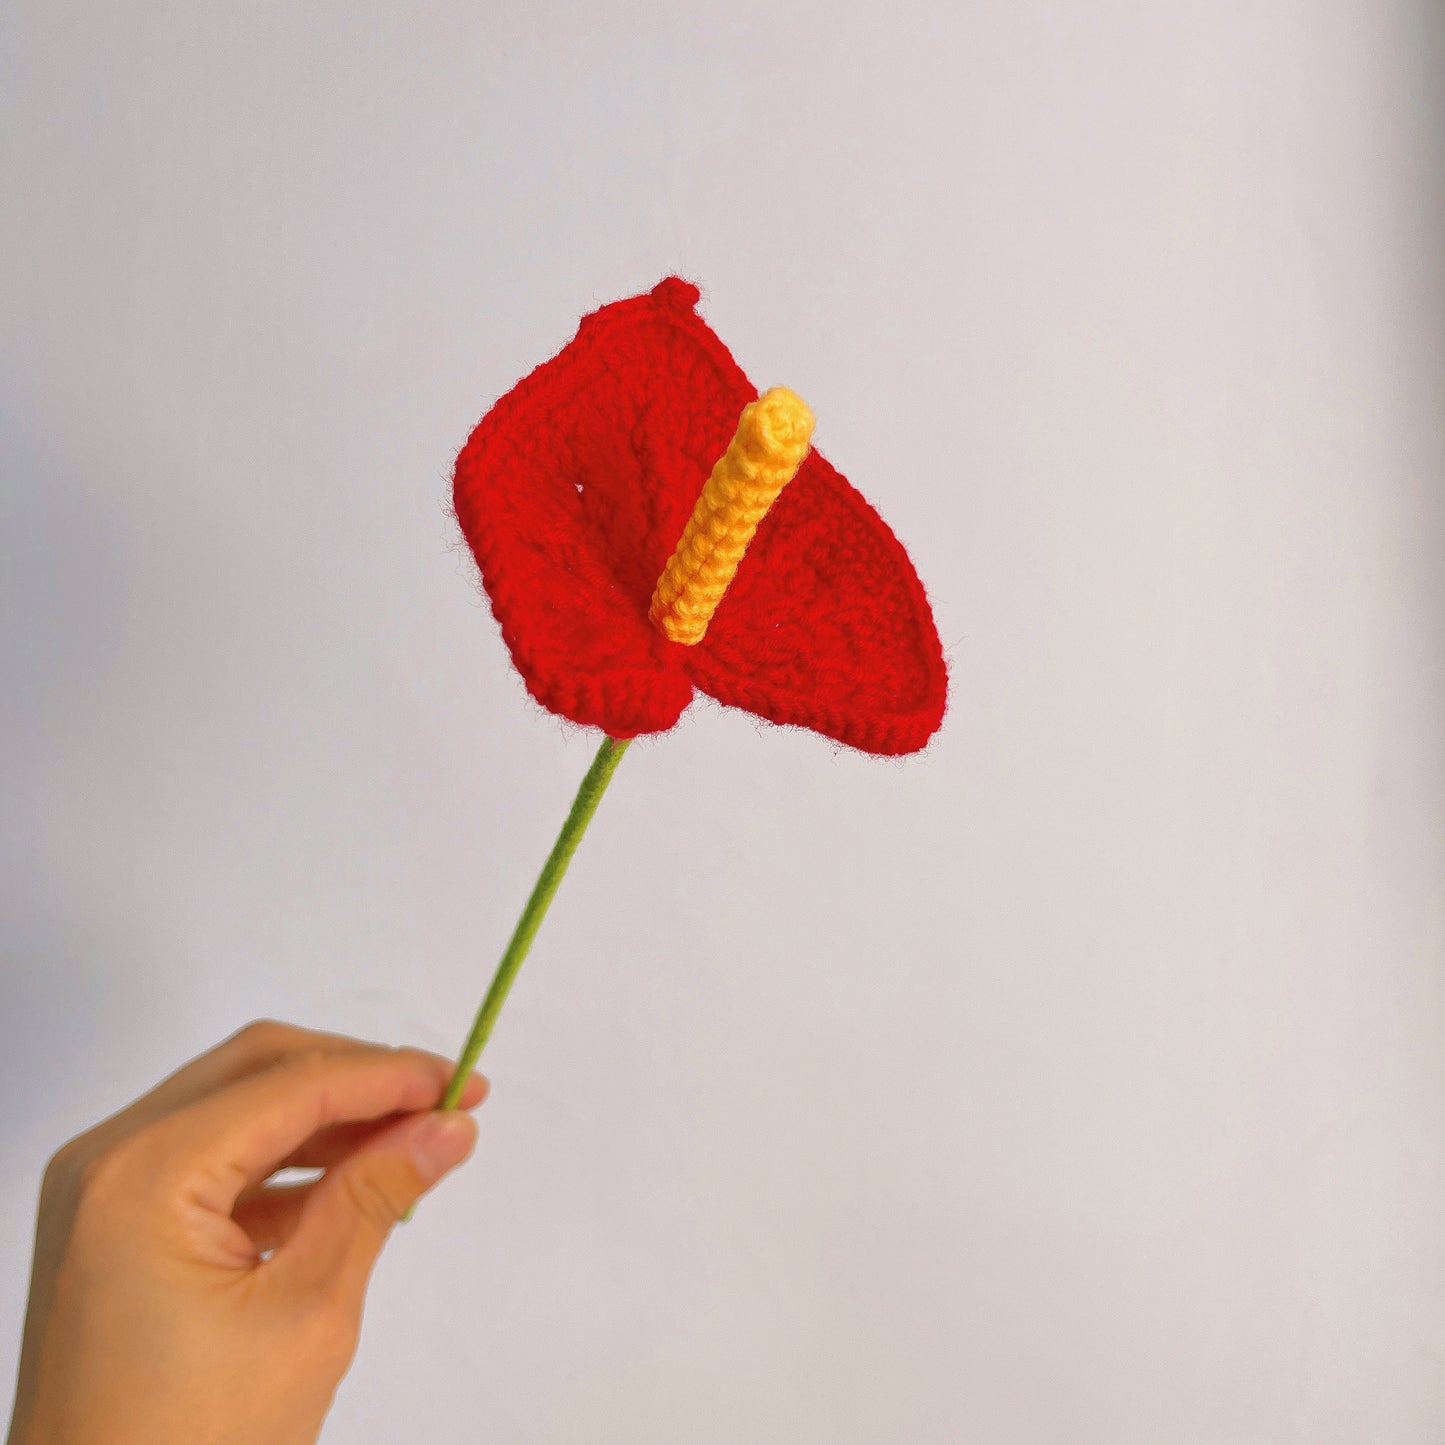 Handgefertigte gehäkelte rote Anthurie: Ein Symbol für Wohlstand und Freude